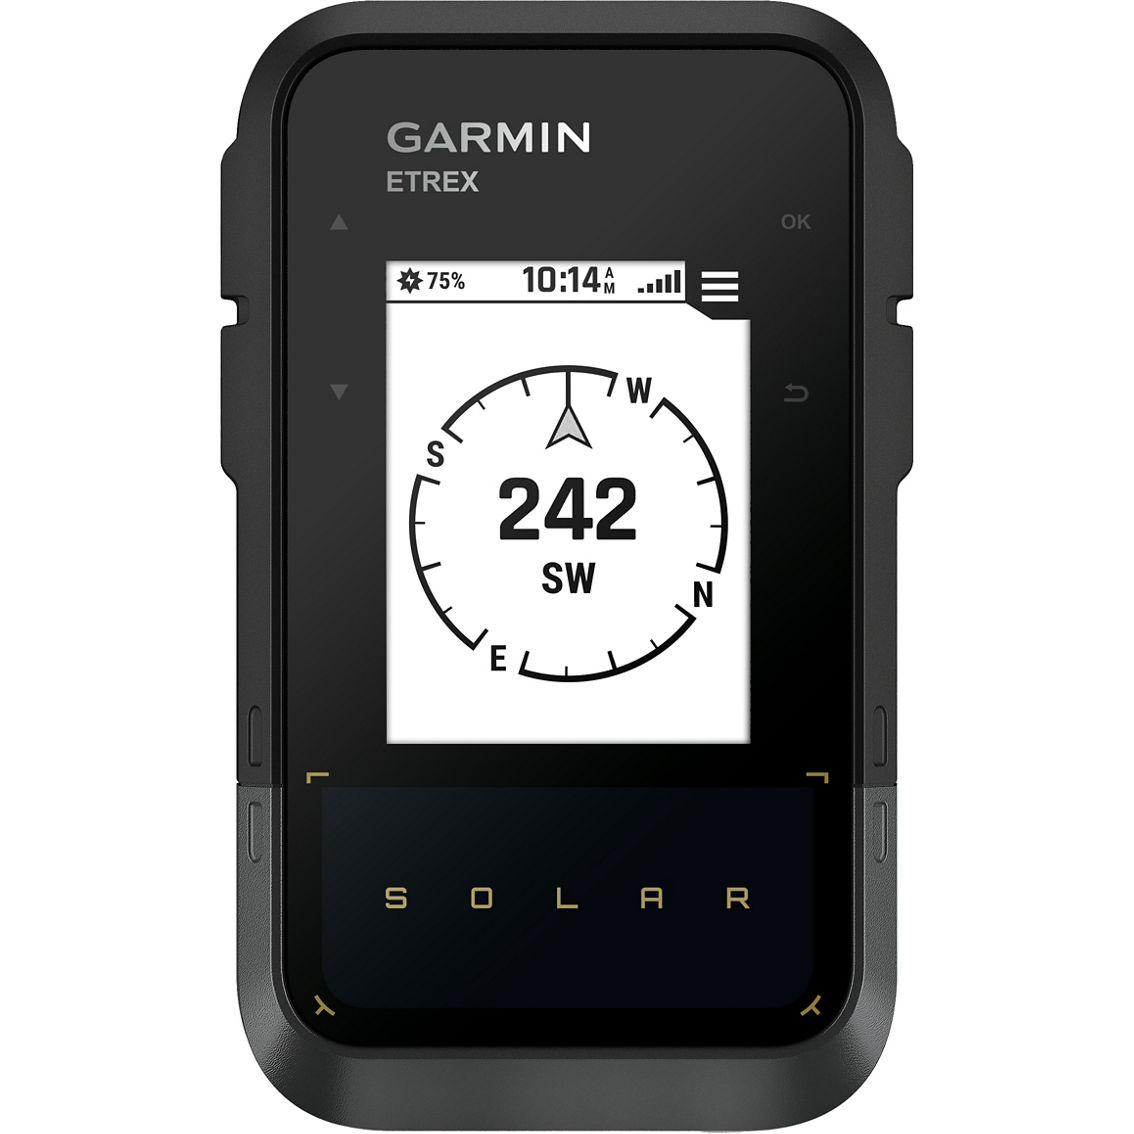 Garmin eTrex Solar Powered GPS Handheld Navigator - Image 4 of 7